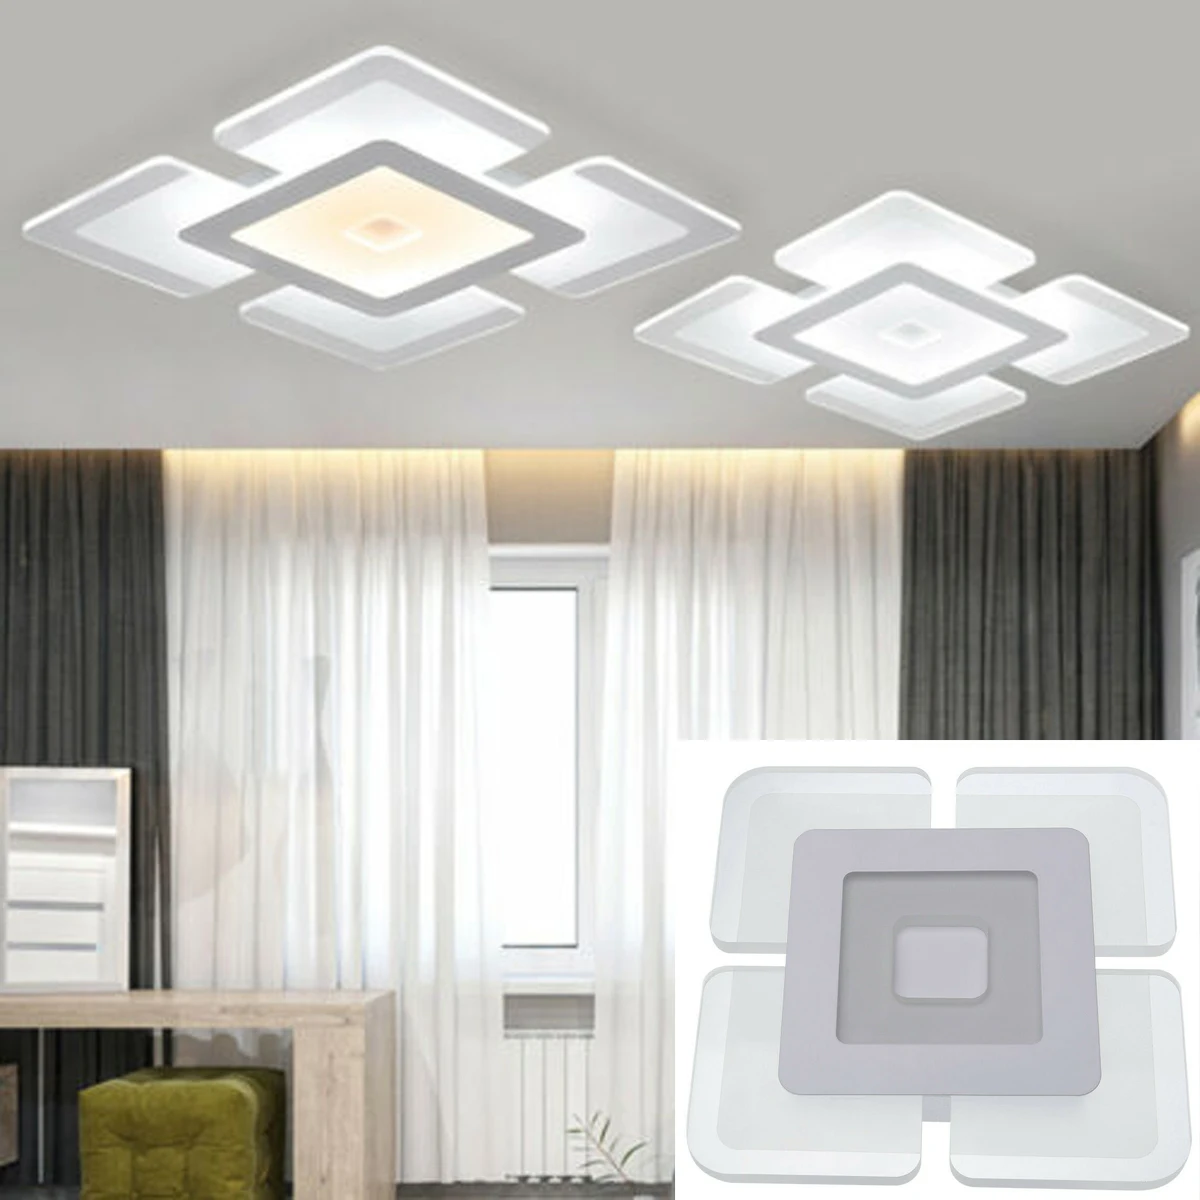 Acrylic LED Ceiling Light Home Lamp Modern Elegant Living Room Bedroom Square 